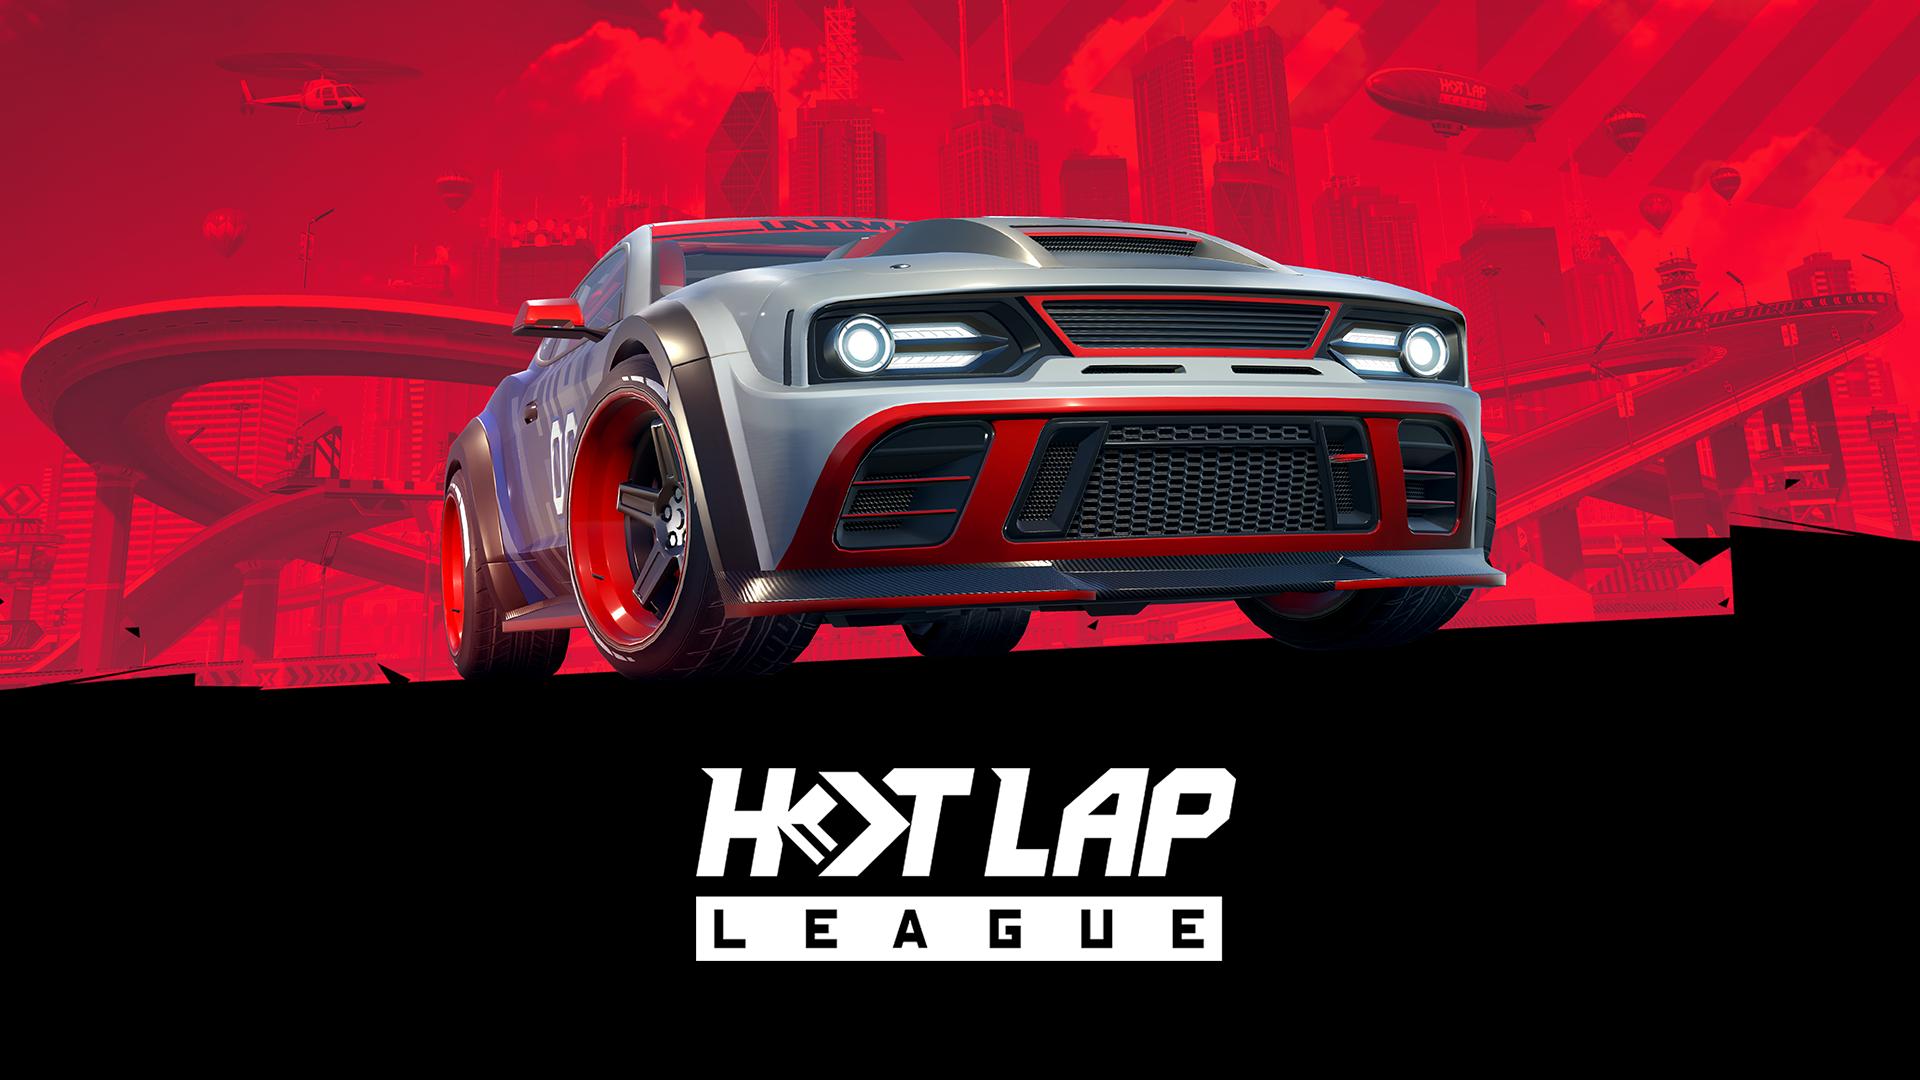 Hot lap league. Hotlap League androeed. Hot lap League: гоночная Мания 1.02.11879 APK. Race League.